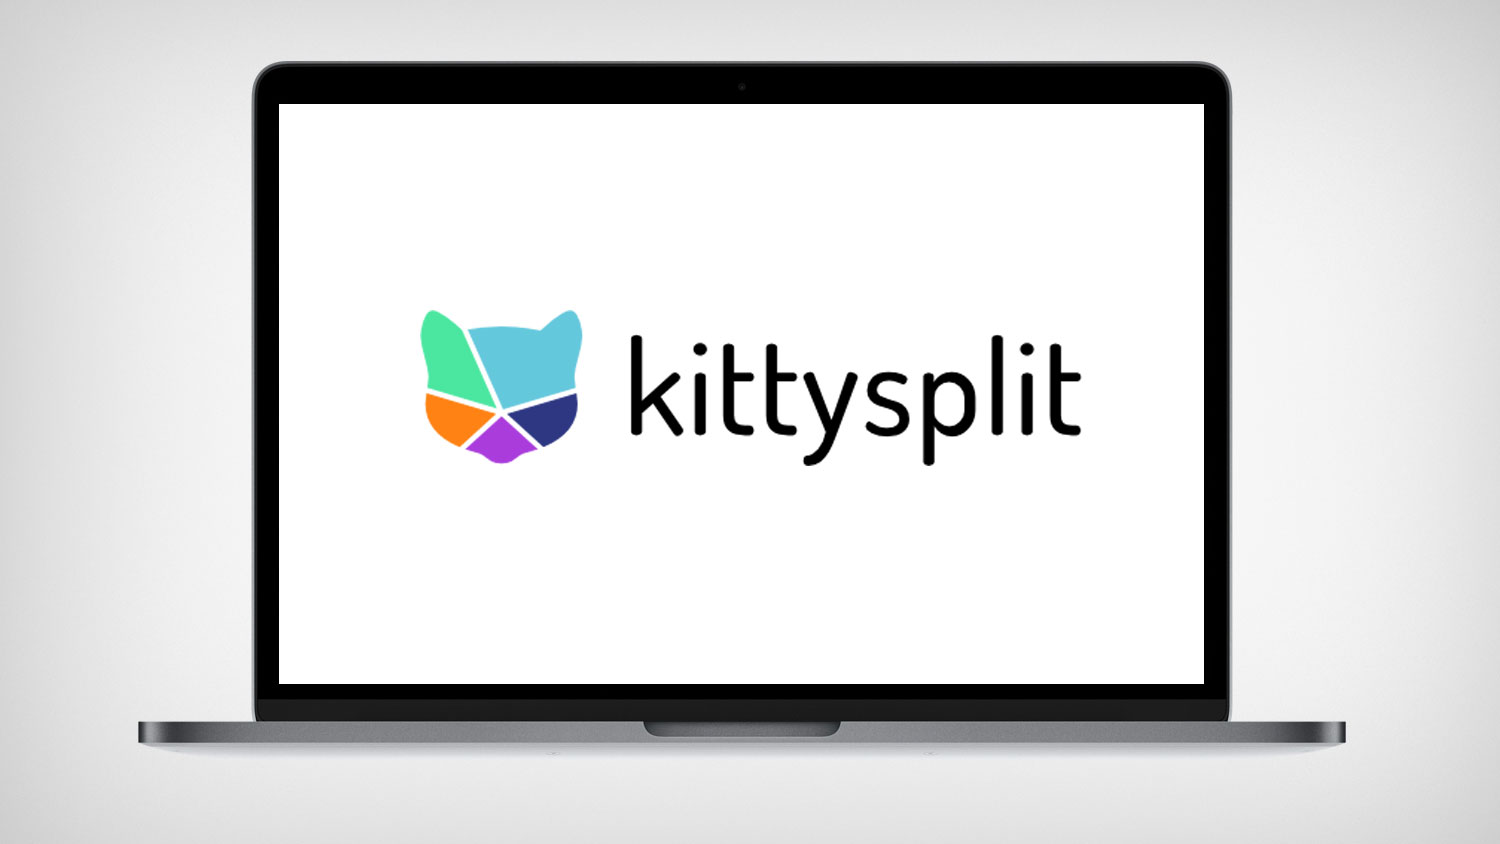 Kittysplit